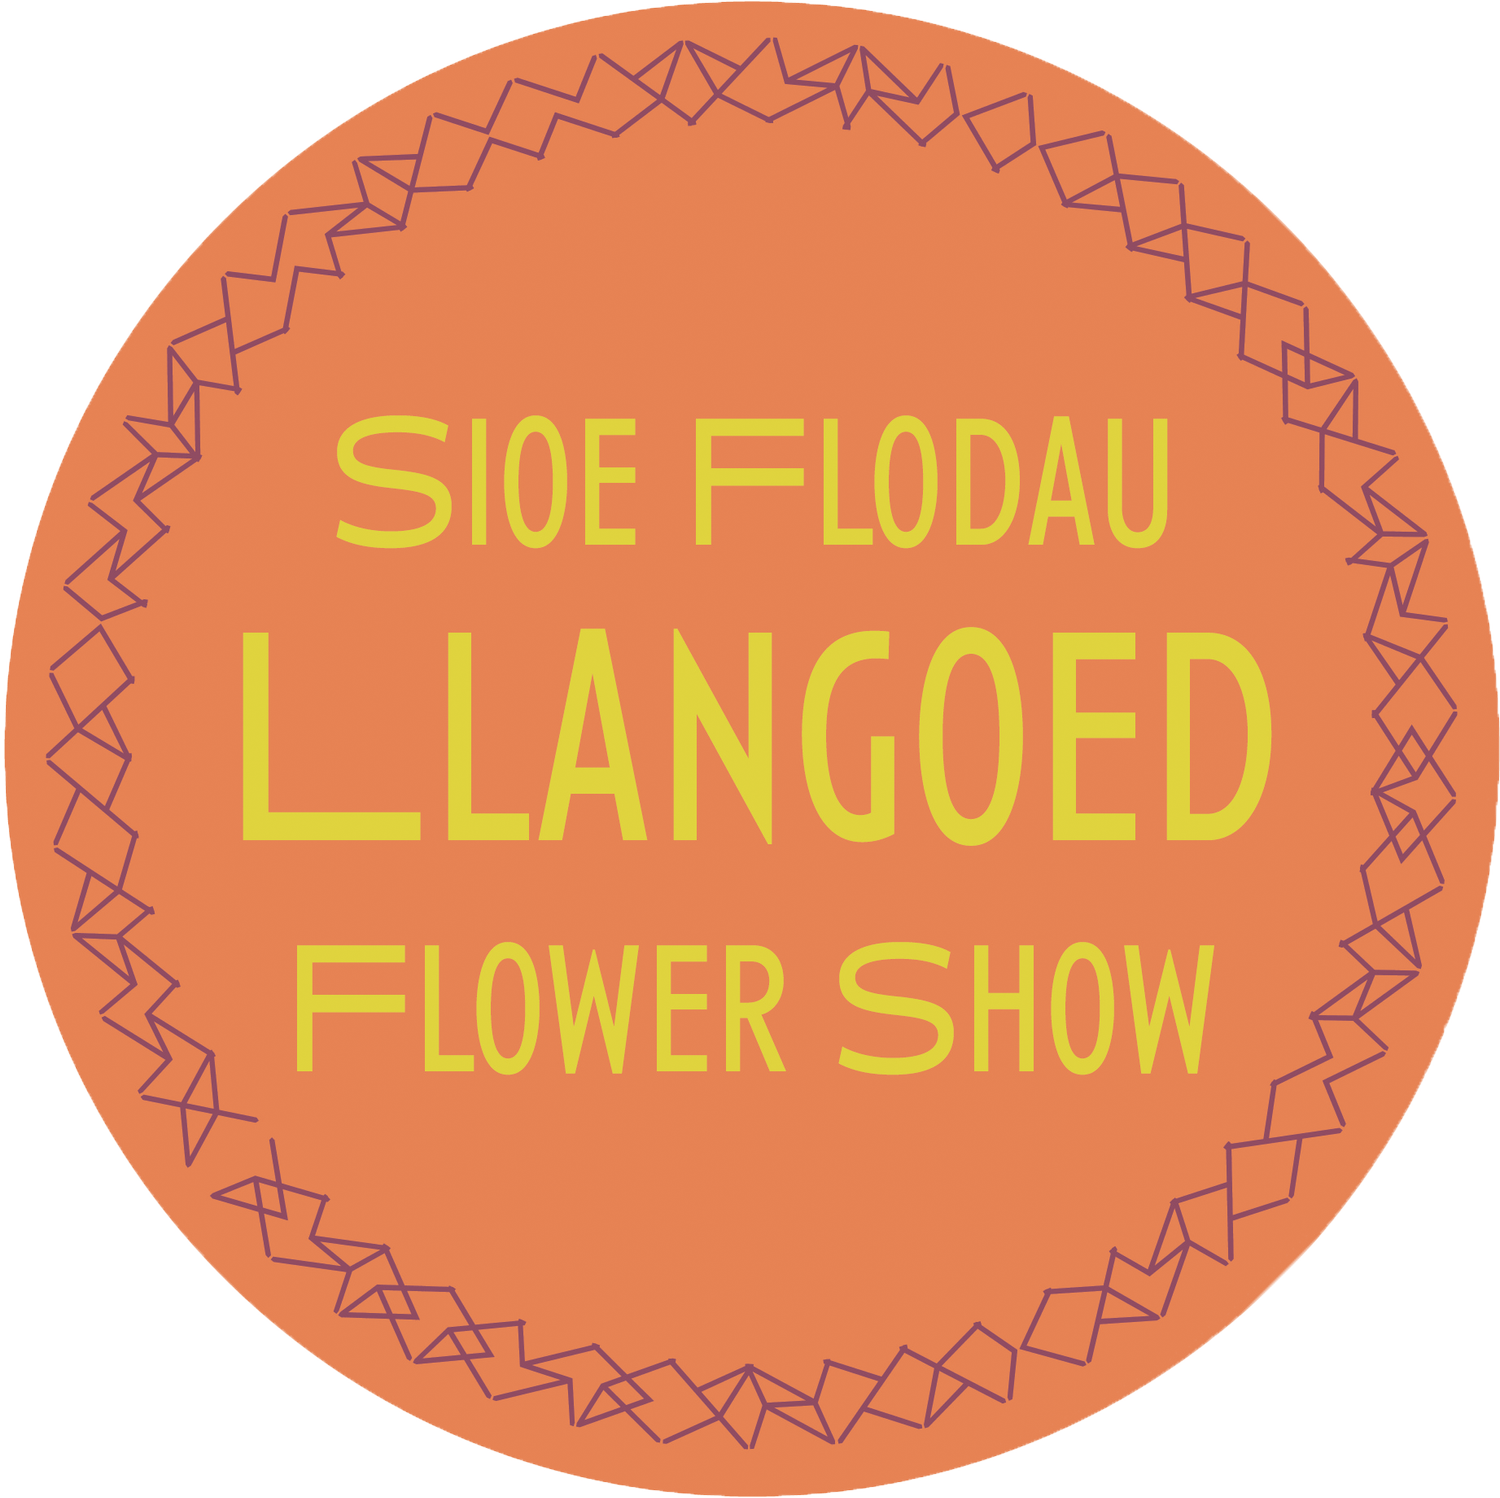 Sioe Flodau Llangoed Flower Show